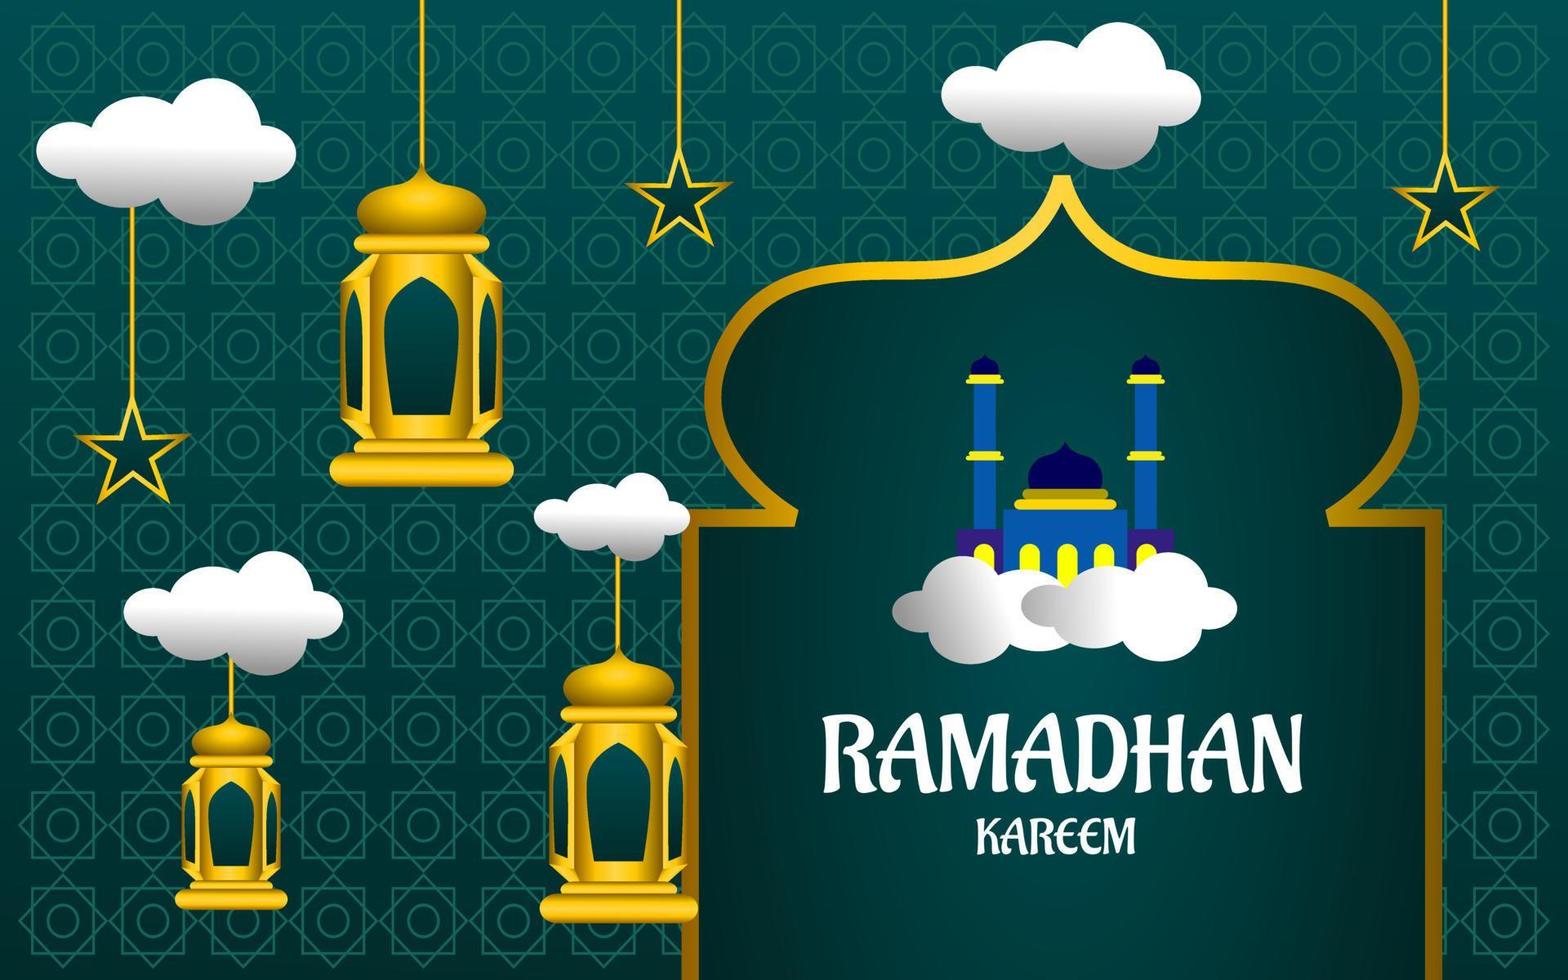 ramadan kareem illustration mit moschee und blauem farbhintergrund vektor